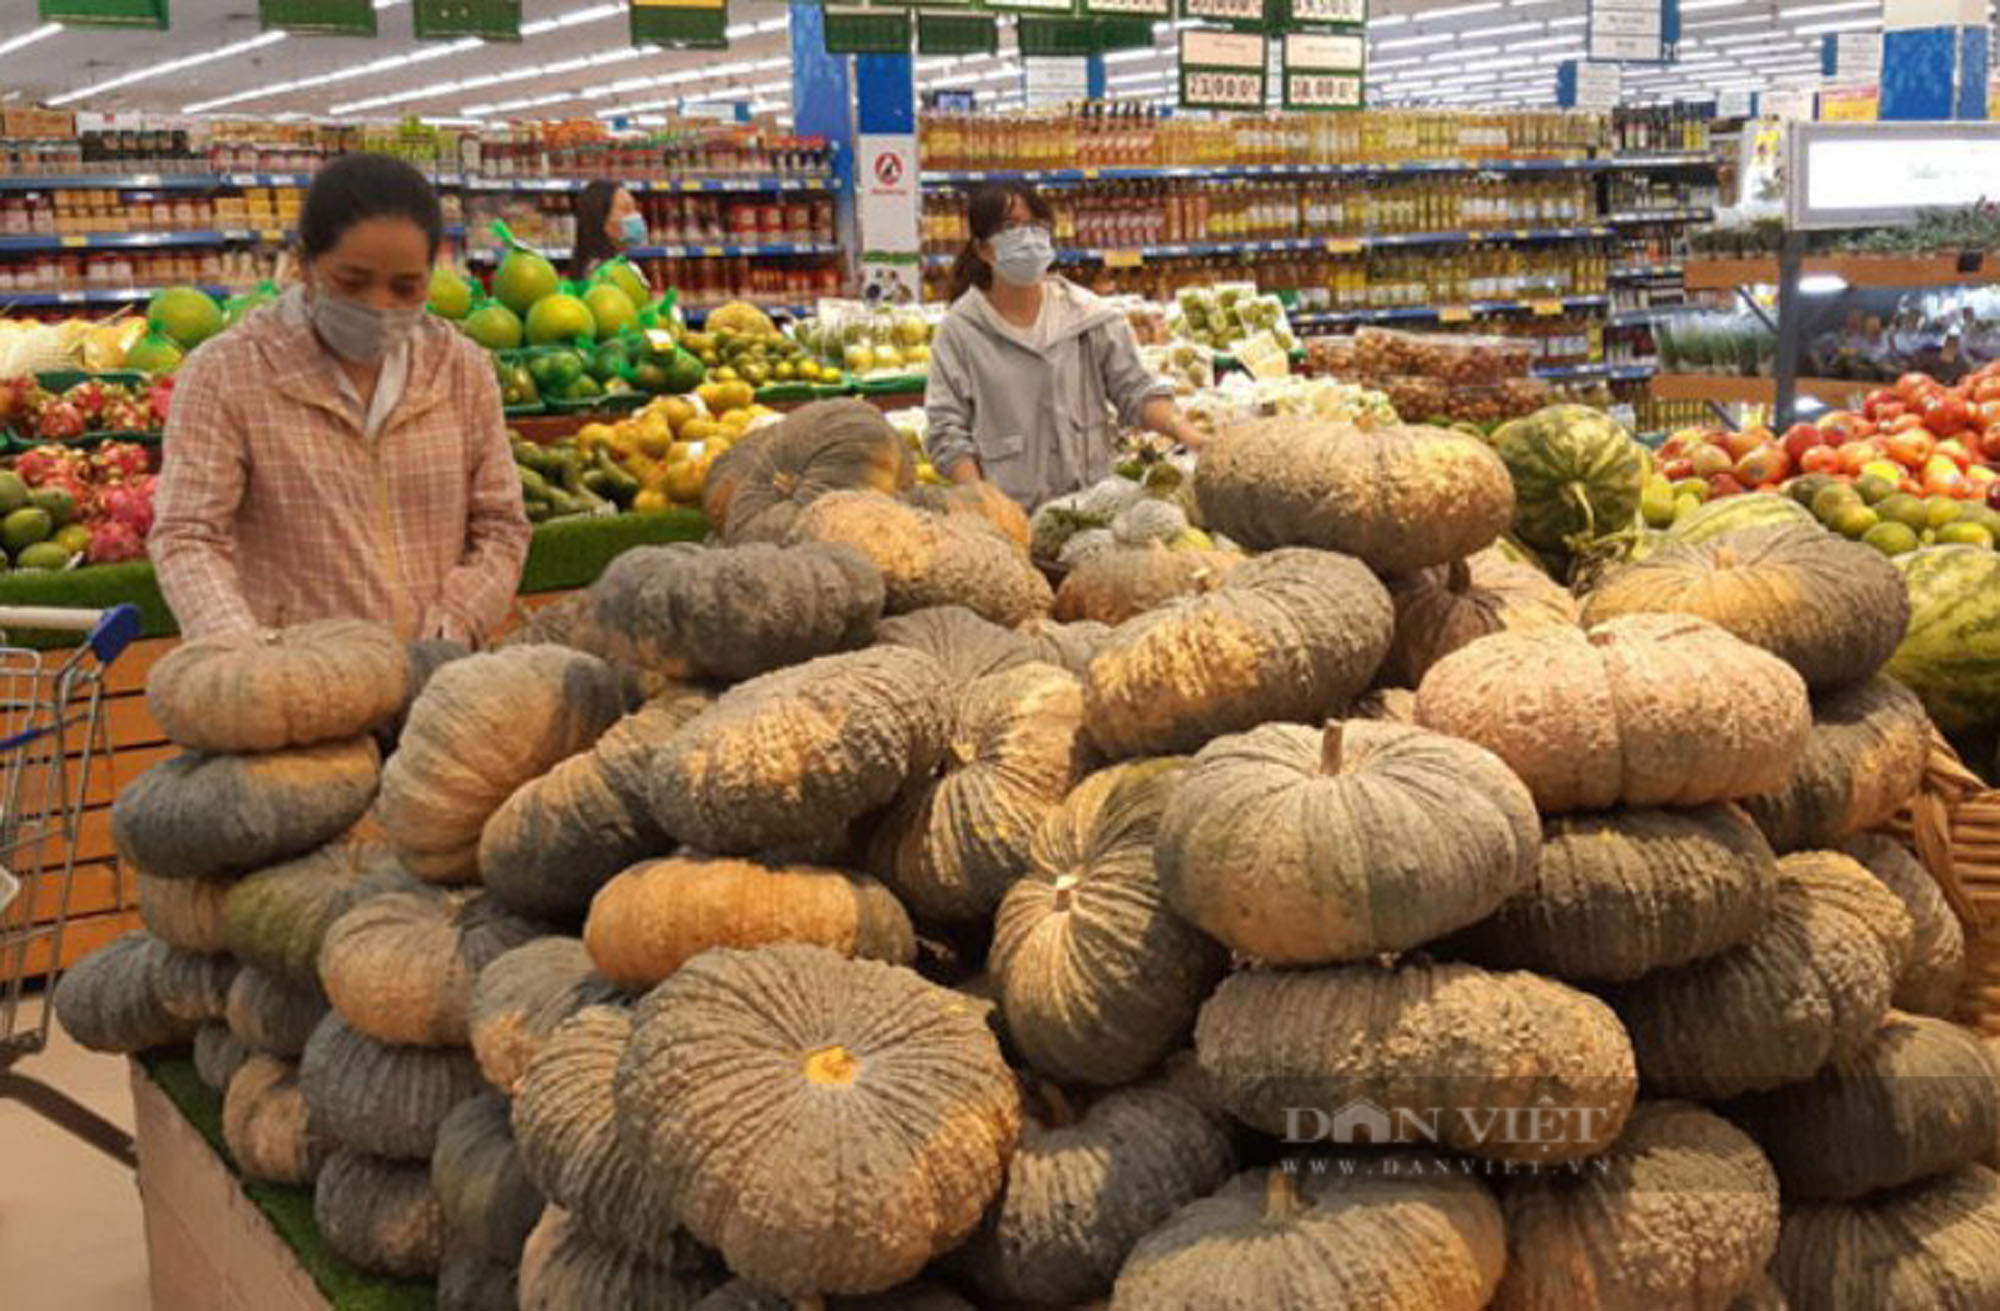 Linh hoạt tiêu thụ nông sản trong bối cảnh dịch Covid-19 tại Phú Yên - Ảnh 2.